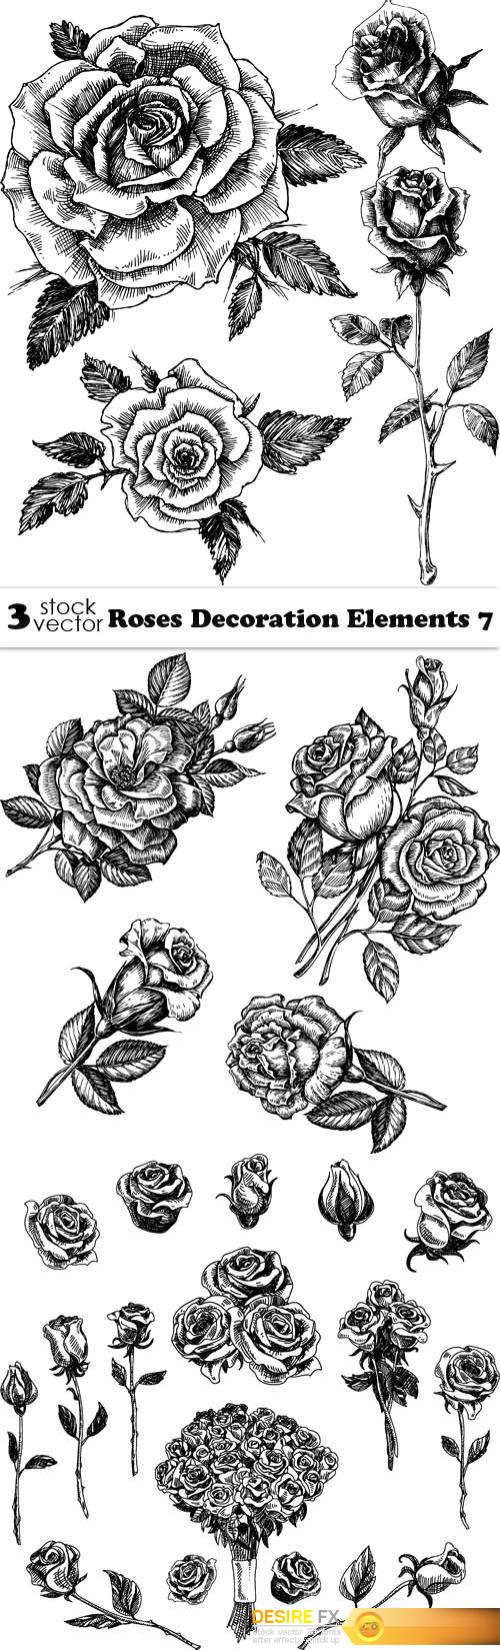 Vectors - Roses Decoration Elements 7